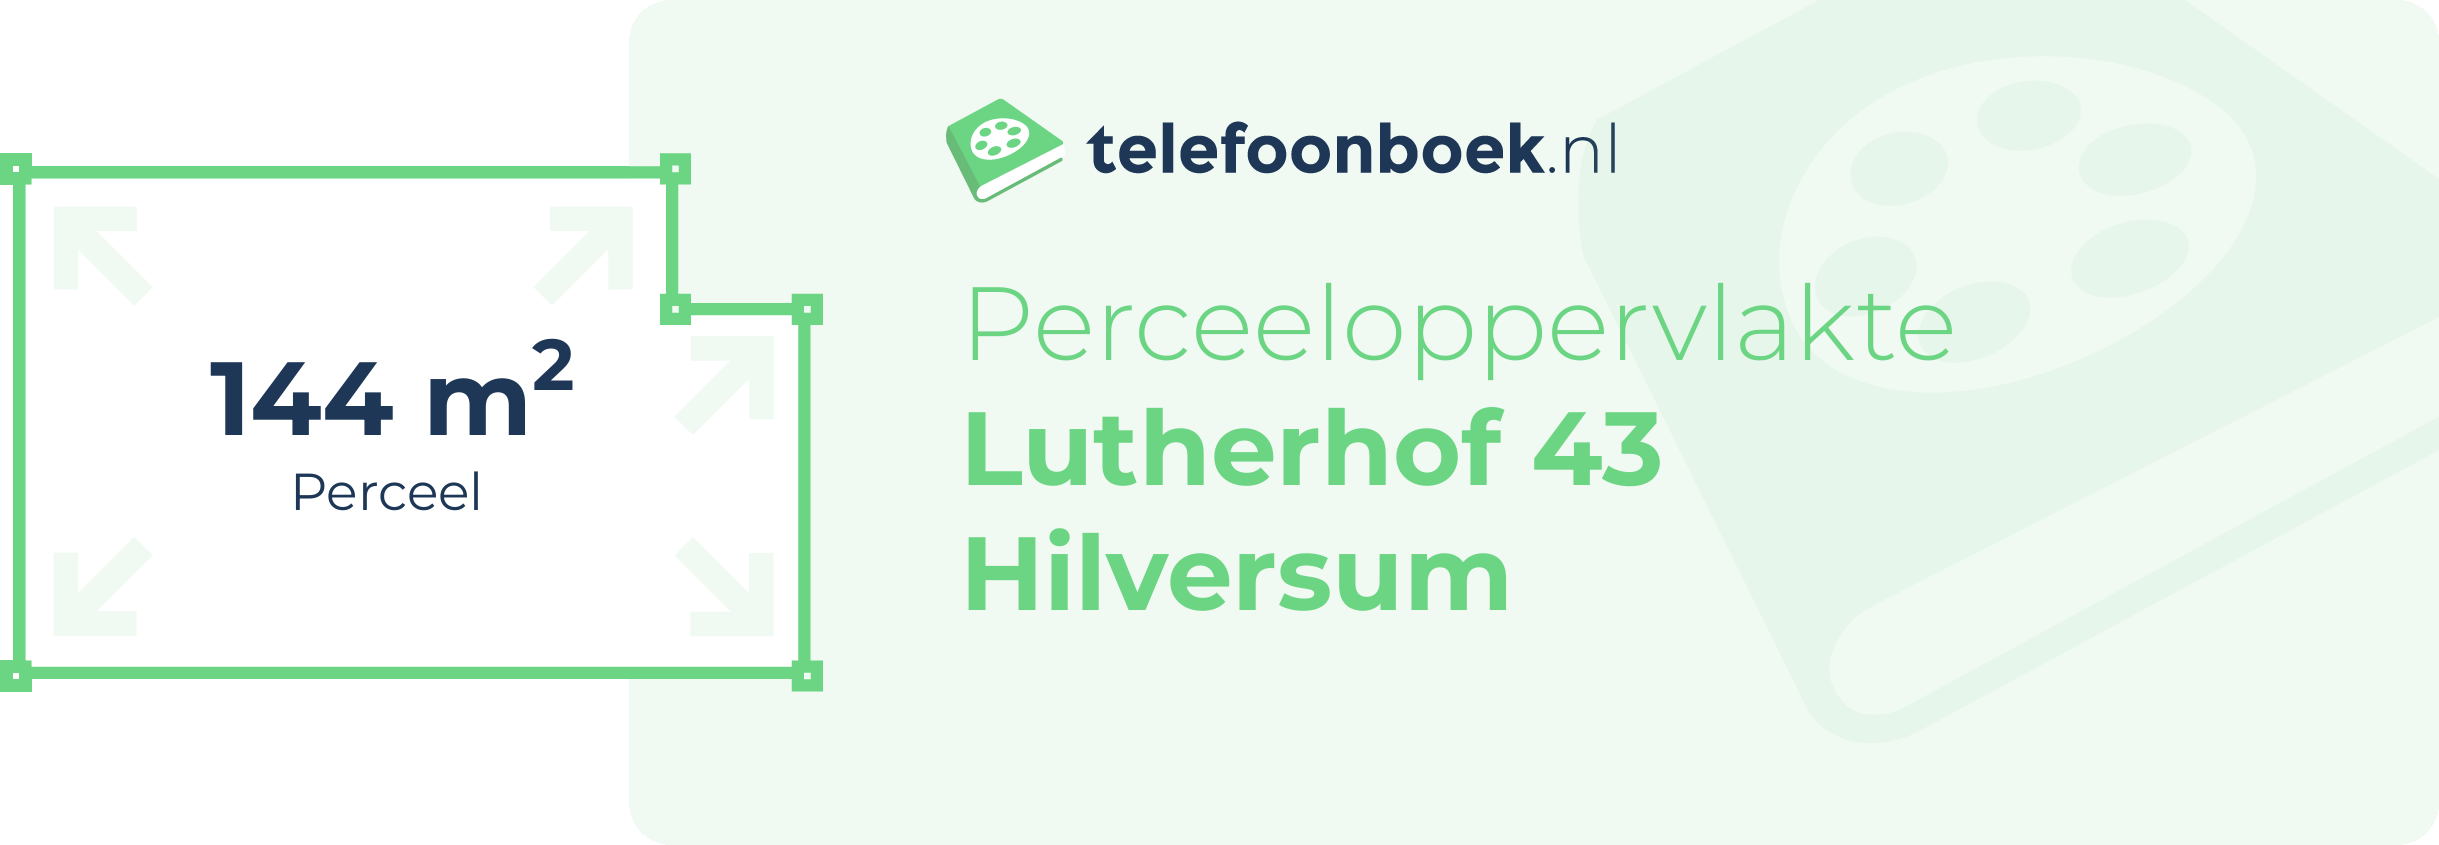 Perceeloppervlakte Lutherhof 43 Hilversum